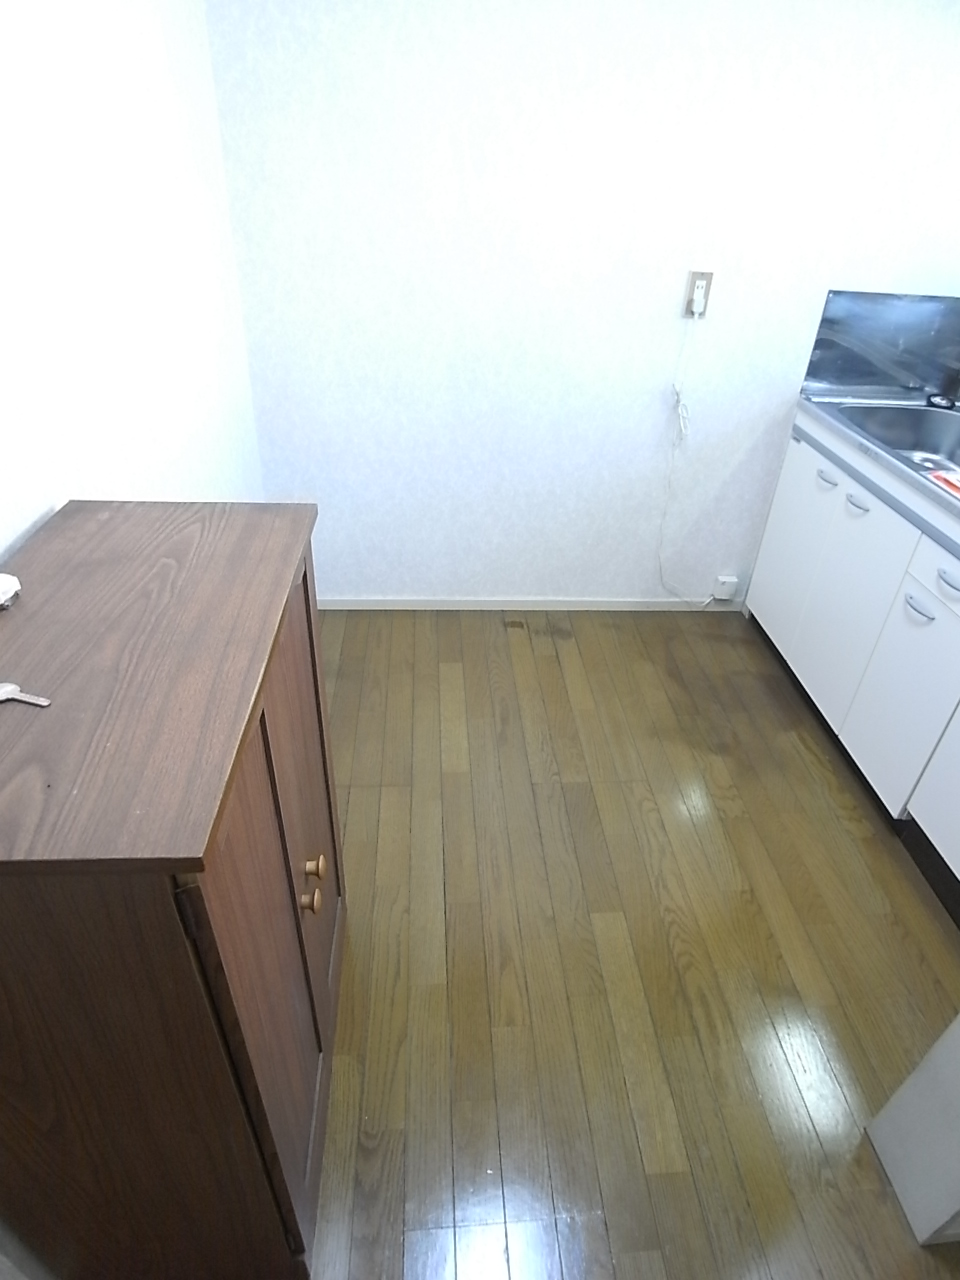 Kitchen. ◇ kitchen space